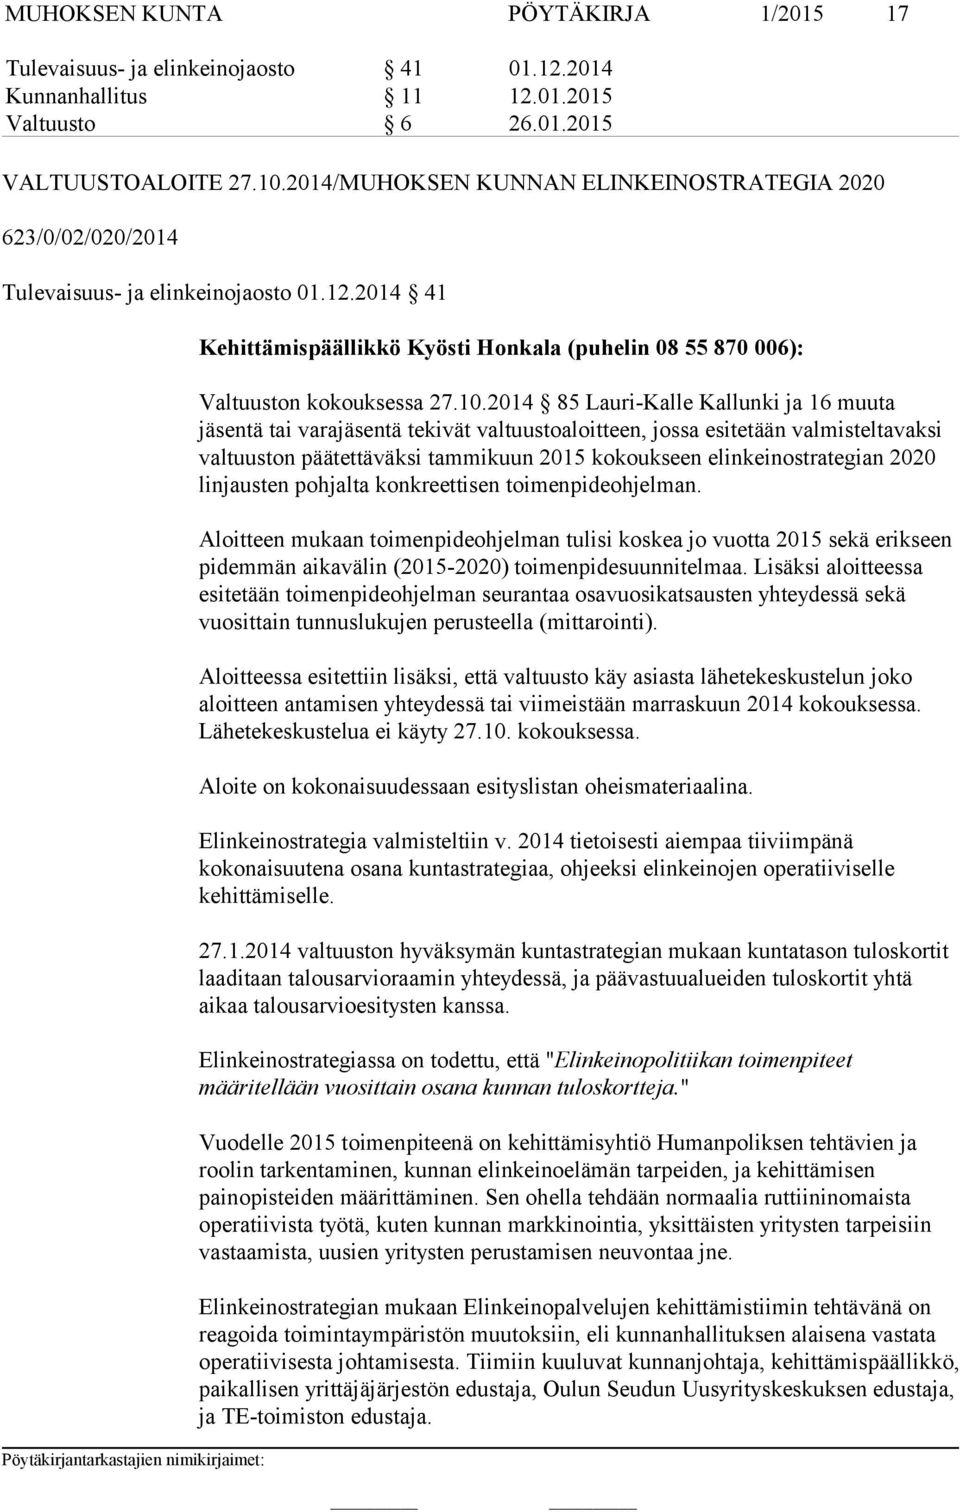 2014 85 Lauri-Kalle Kallunki ja 16 muuta tä tai varatä tekivät valtuustoaloitteen, jossa esitetään valmisteltavaksi valtuuston päätettäväksi tammikuun 2015 kokoukseen elinkeinostrategian 2020